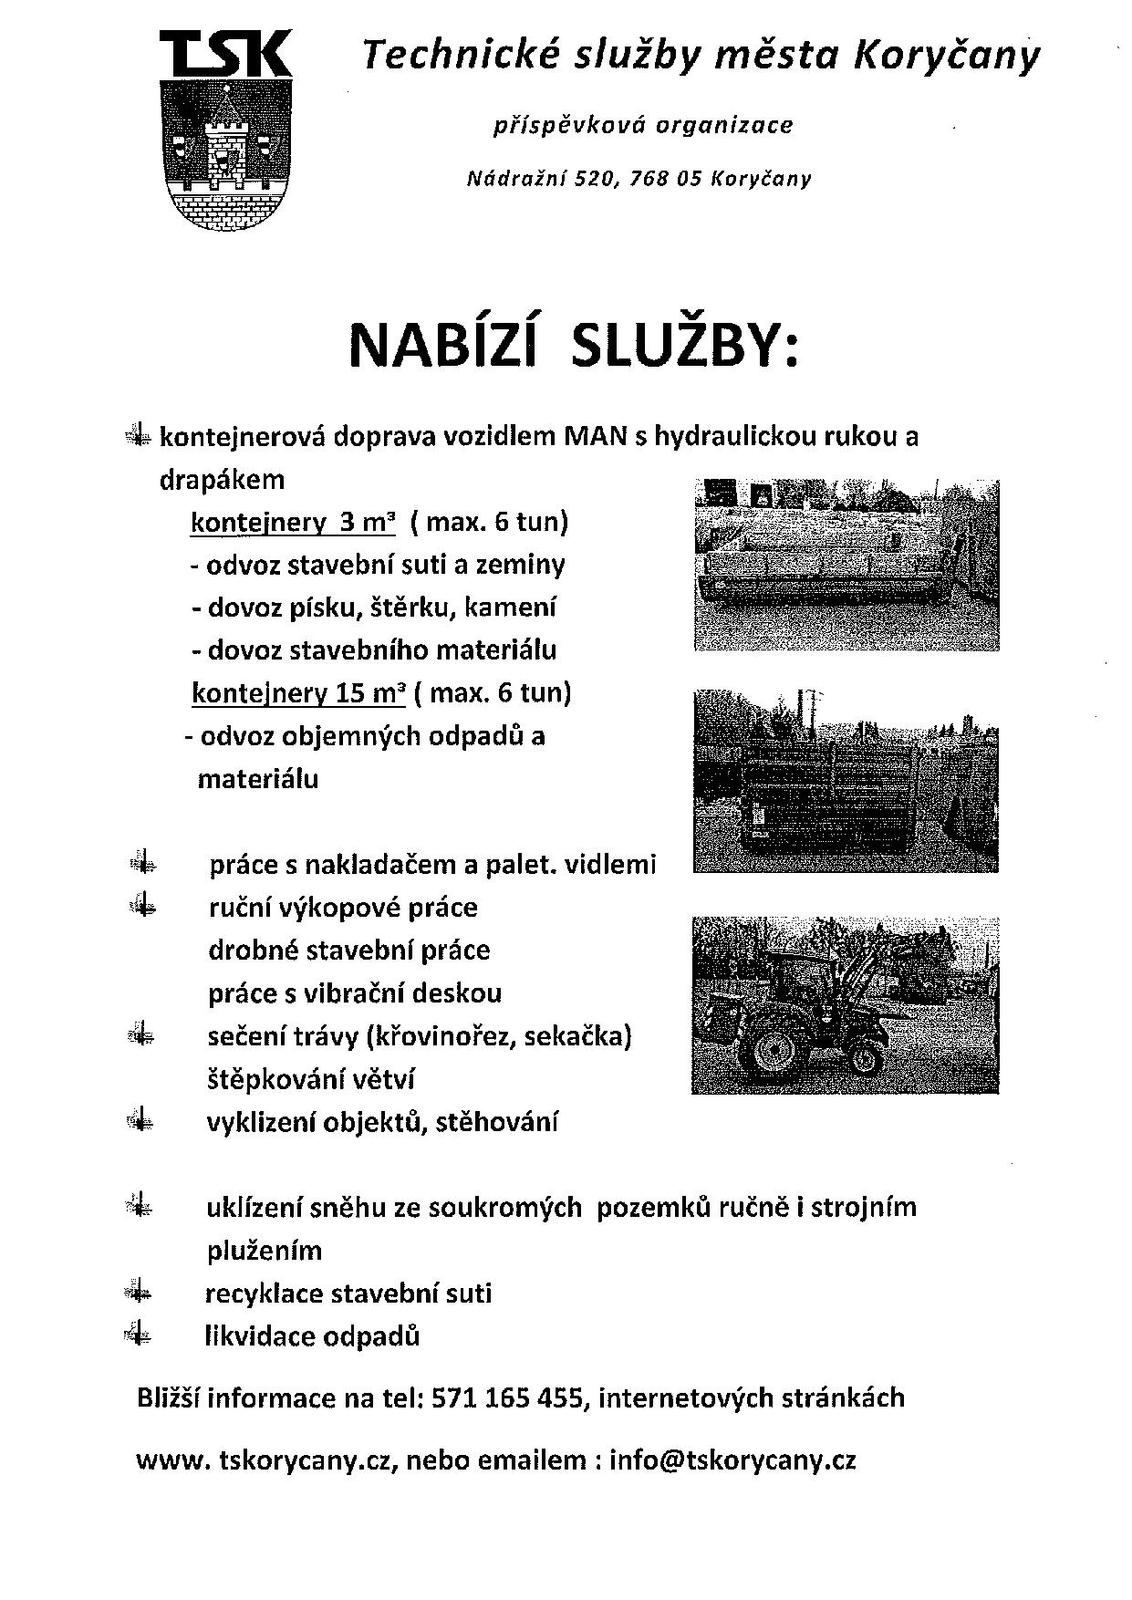 nabidka_sluzeb_ts_korycany_2015-page-001.jpg